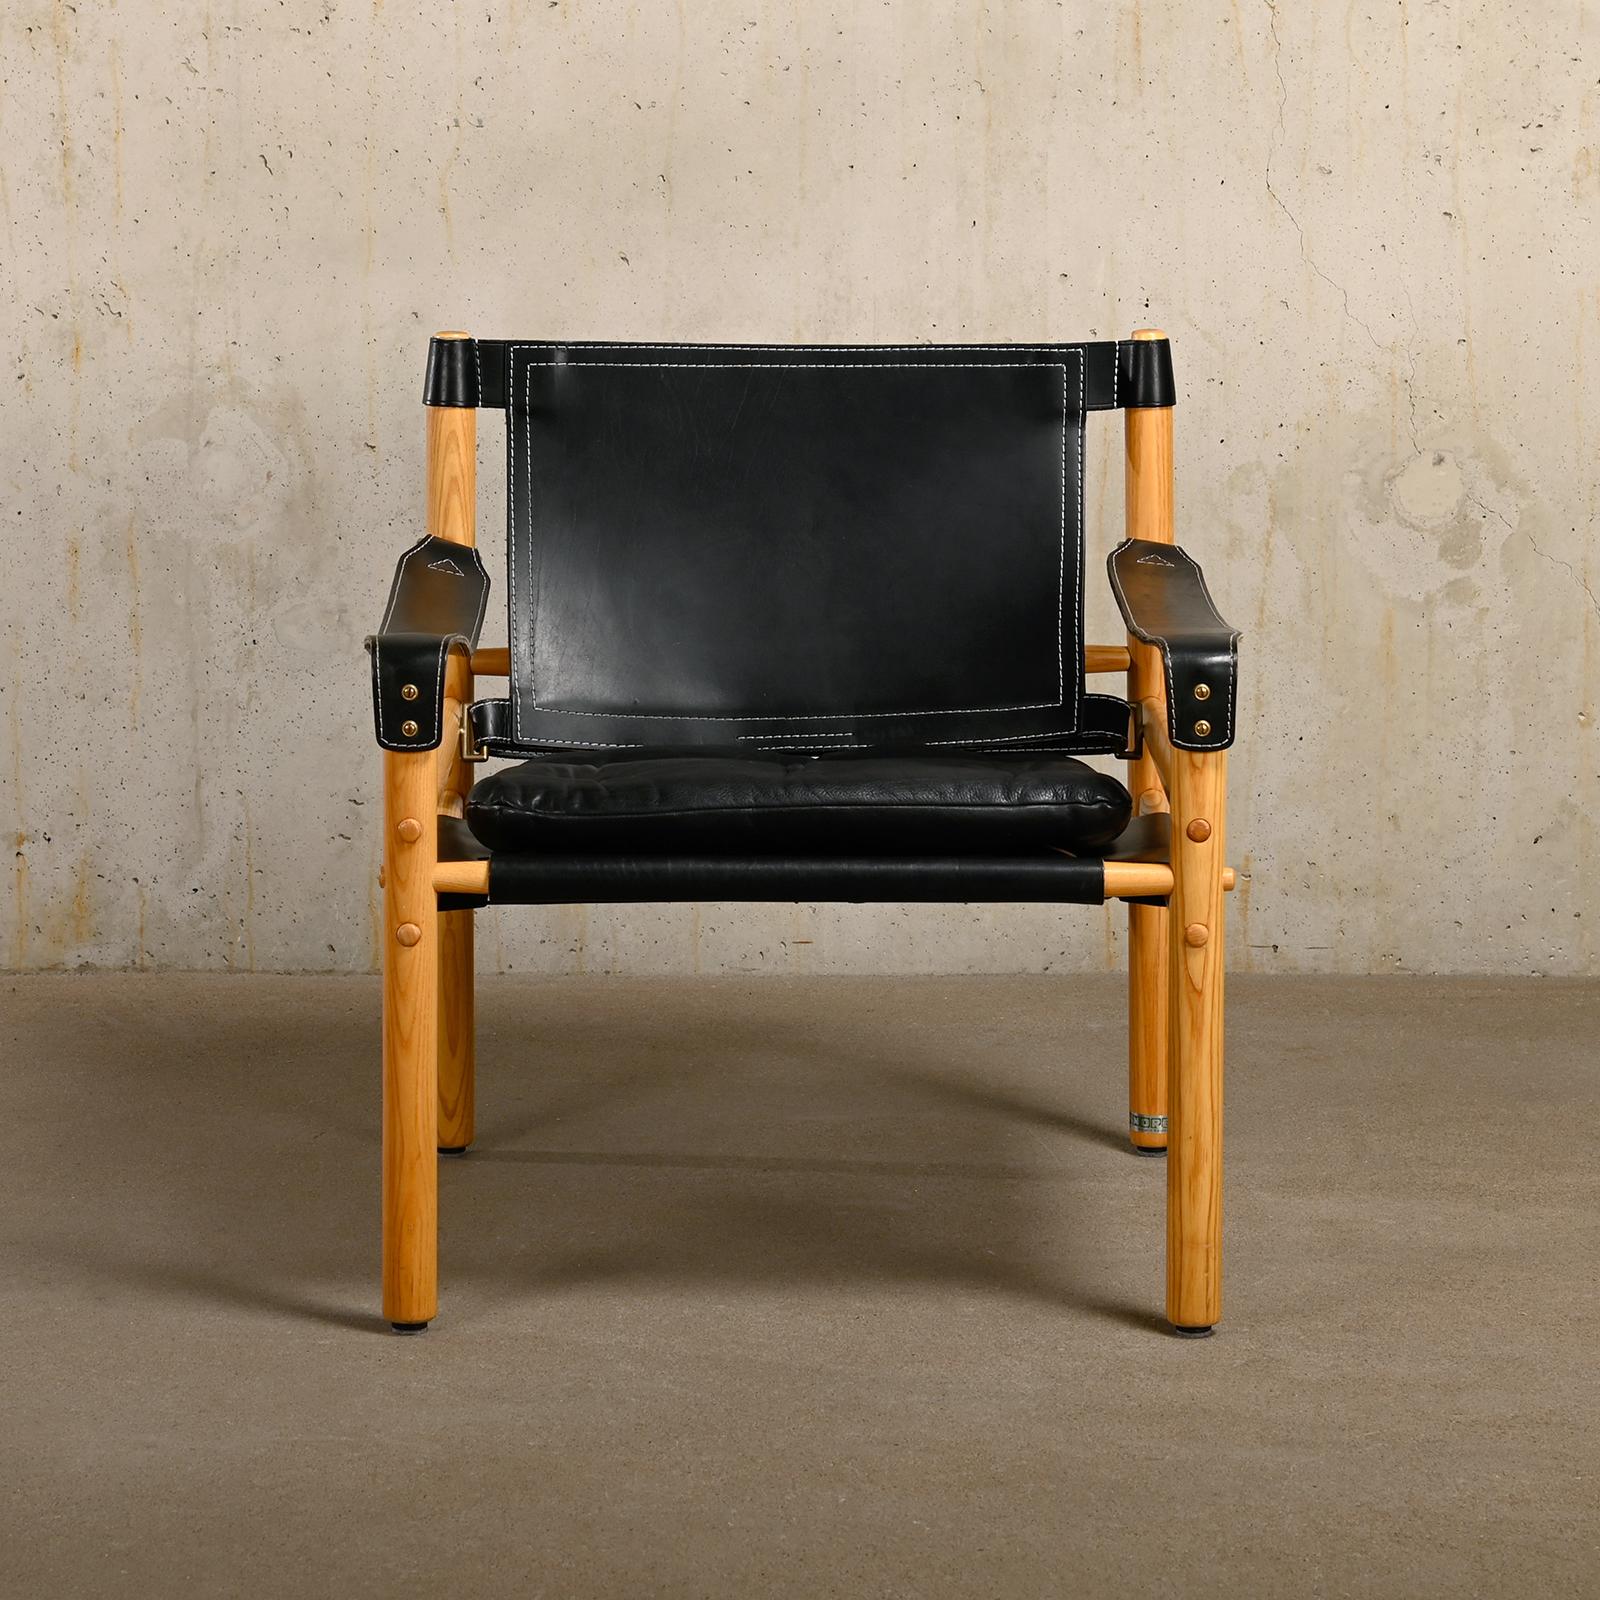 Großartiger Sirocco Safari Lounge Chair, entworfen von Arne Norell und hergestellt von Norell Möbel AB in Schweden. Hell patinierter Eschenholzrahmen mit dem originalen Lederkissen in schönem schwarzem Leder. Alle in sehr gutem Zustand.